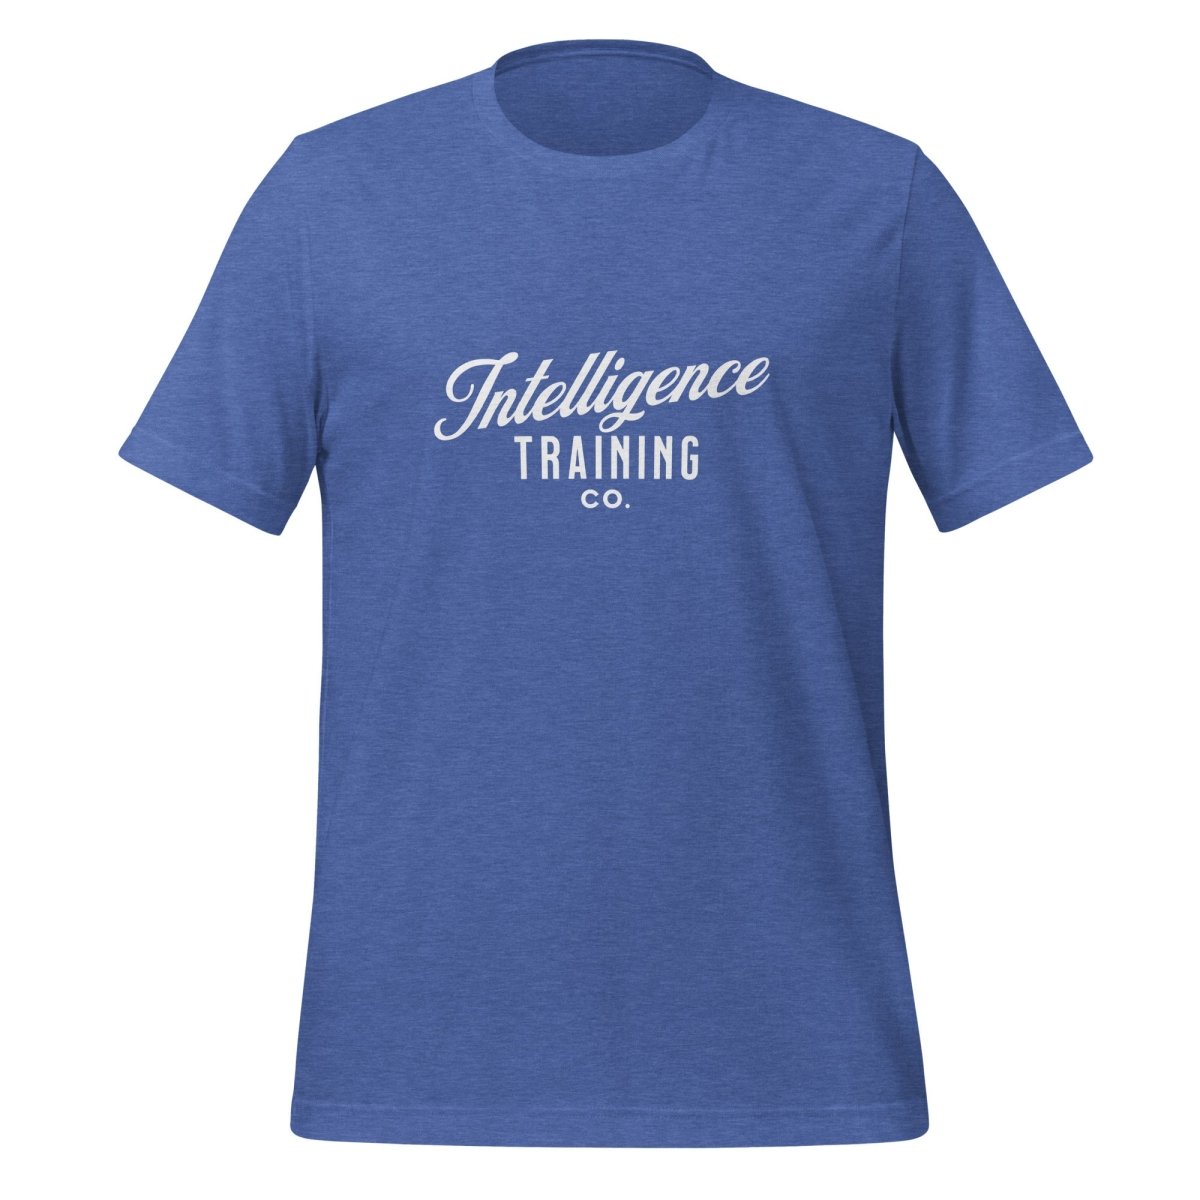 Intelligence Training Co. T - Shirt (unisex) - Heather True Royal - AI Store